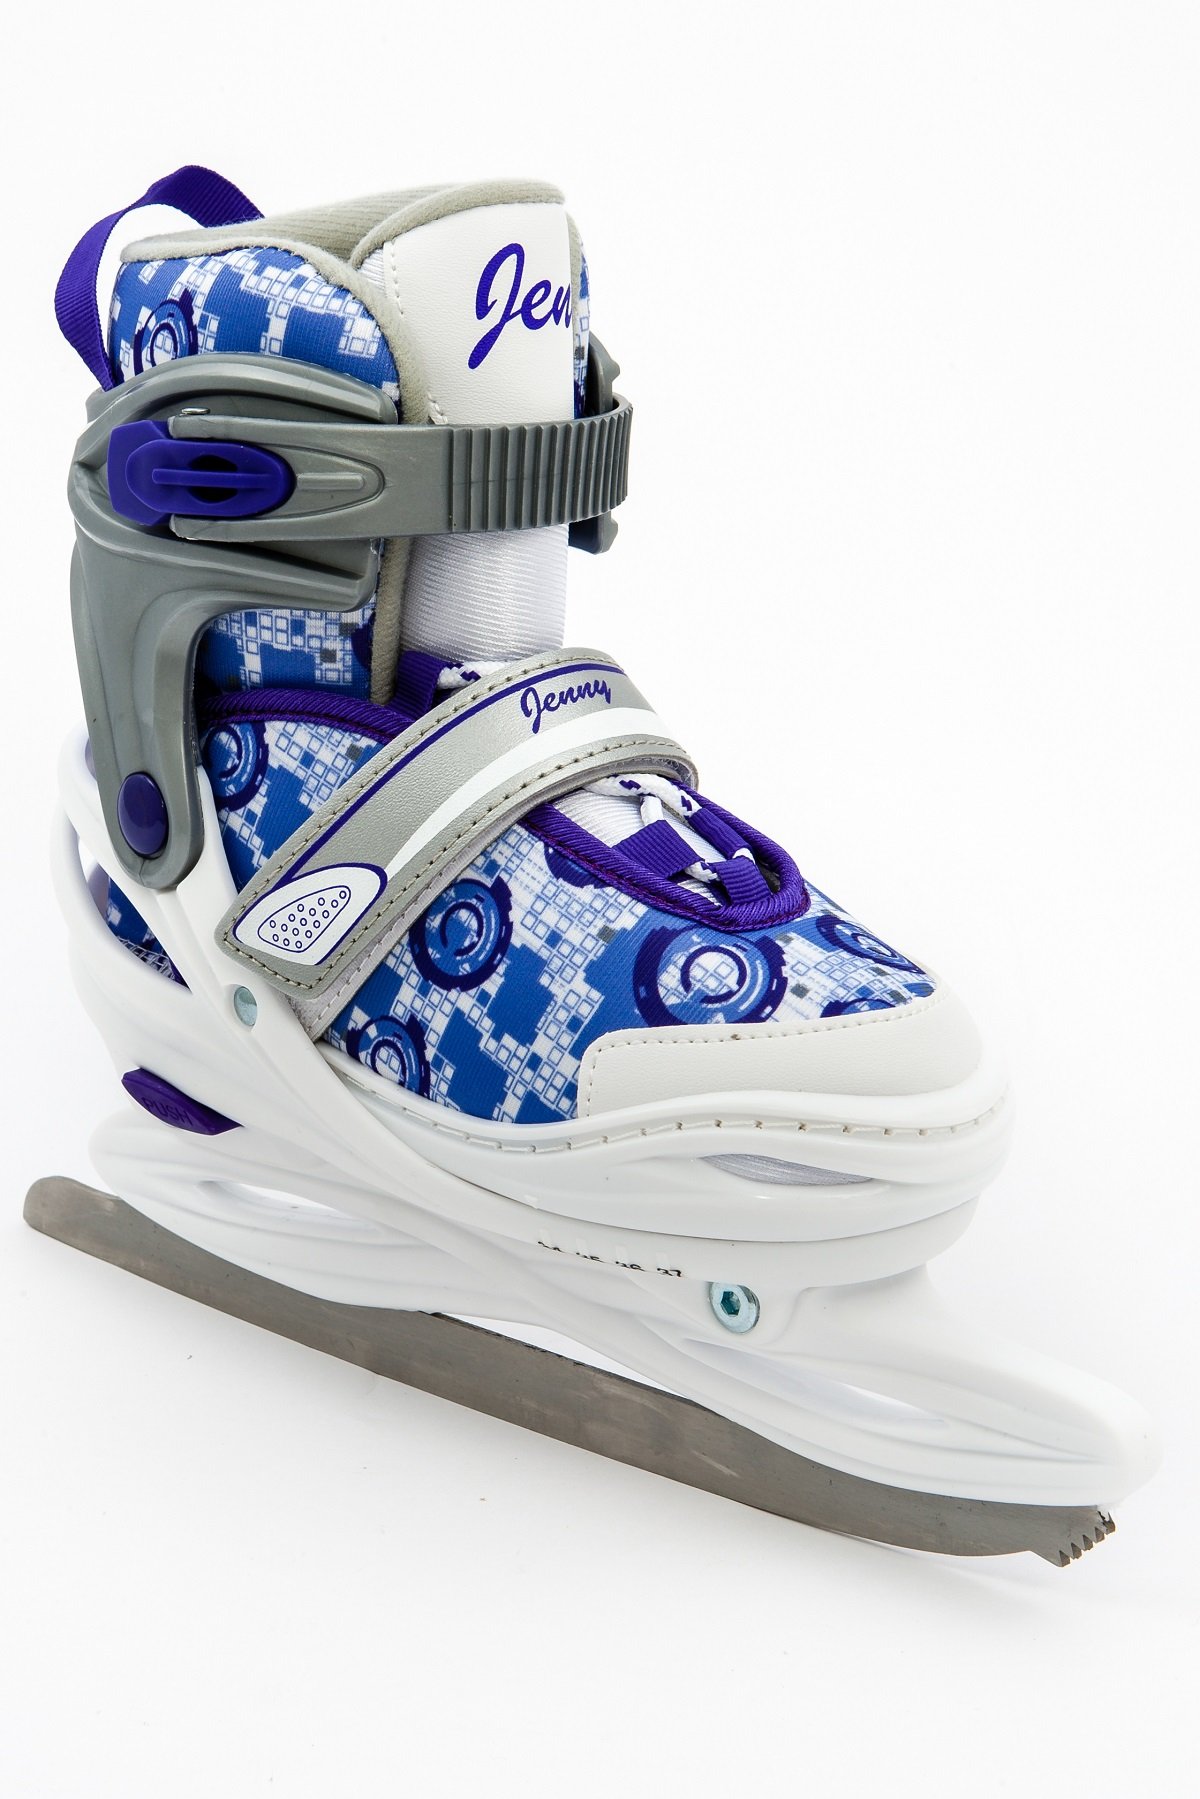 <b> CALAMBUS JENNY ICE </b> <br> Раздвижные ледовые коньки<br>- мягкий внутренний ботинок<br>- лезвие из высокоуглеродистой стали<br>- размеры: M (34-37) <br> Подробнее >>